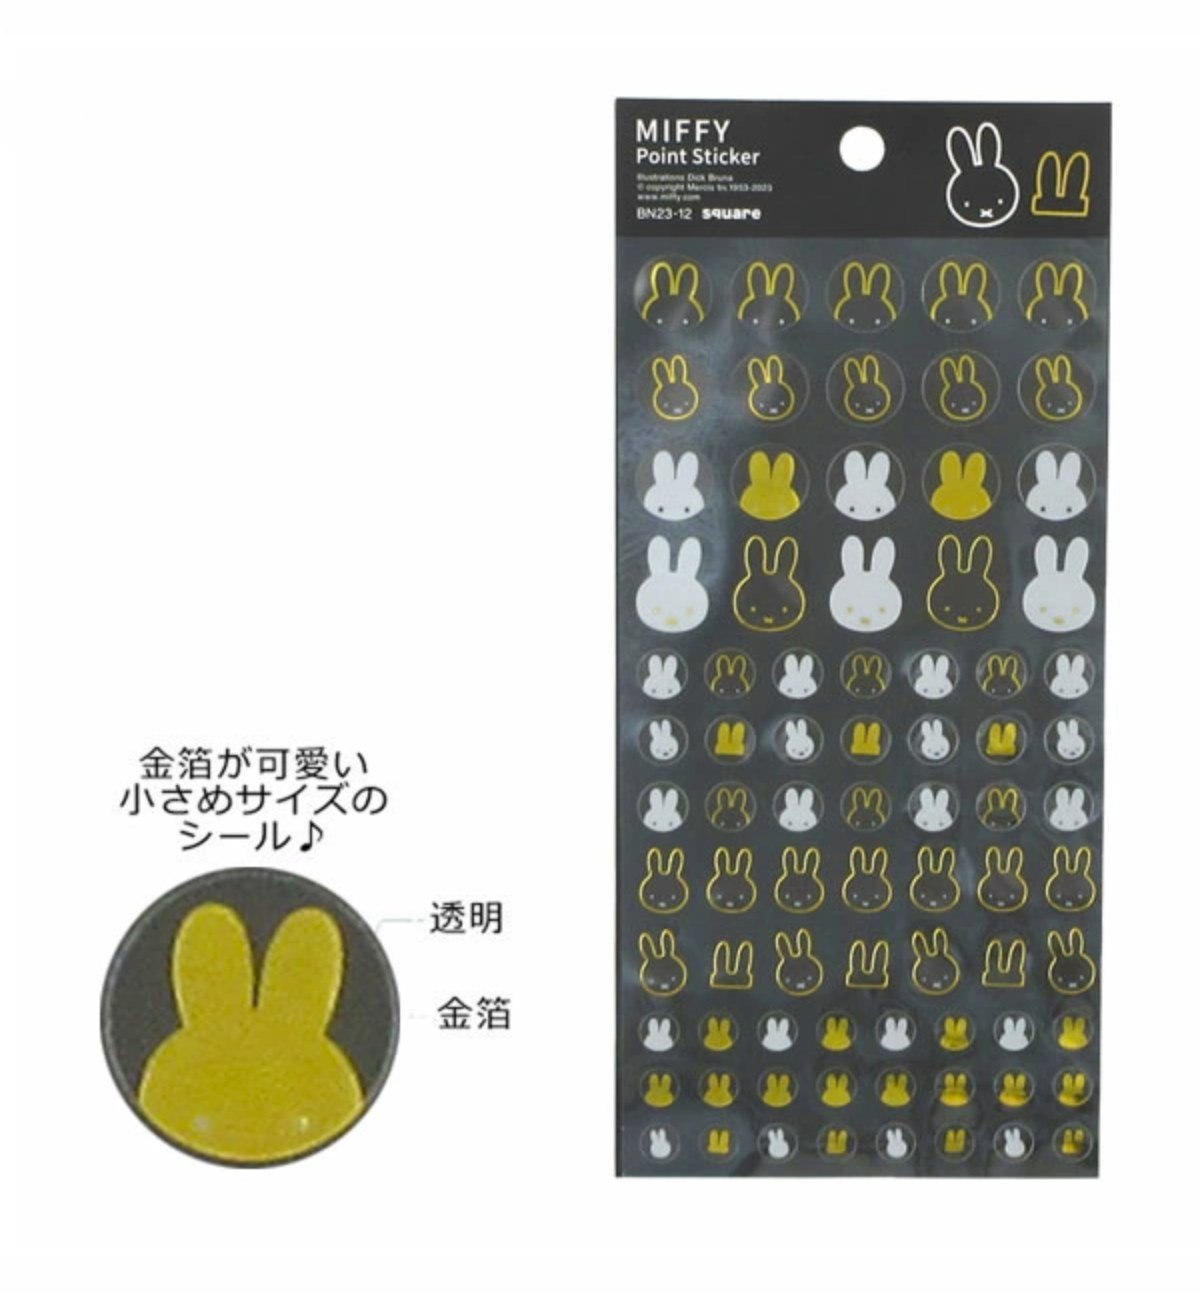 Miffy Golden Point Seal Sticker [Black]